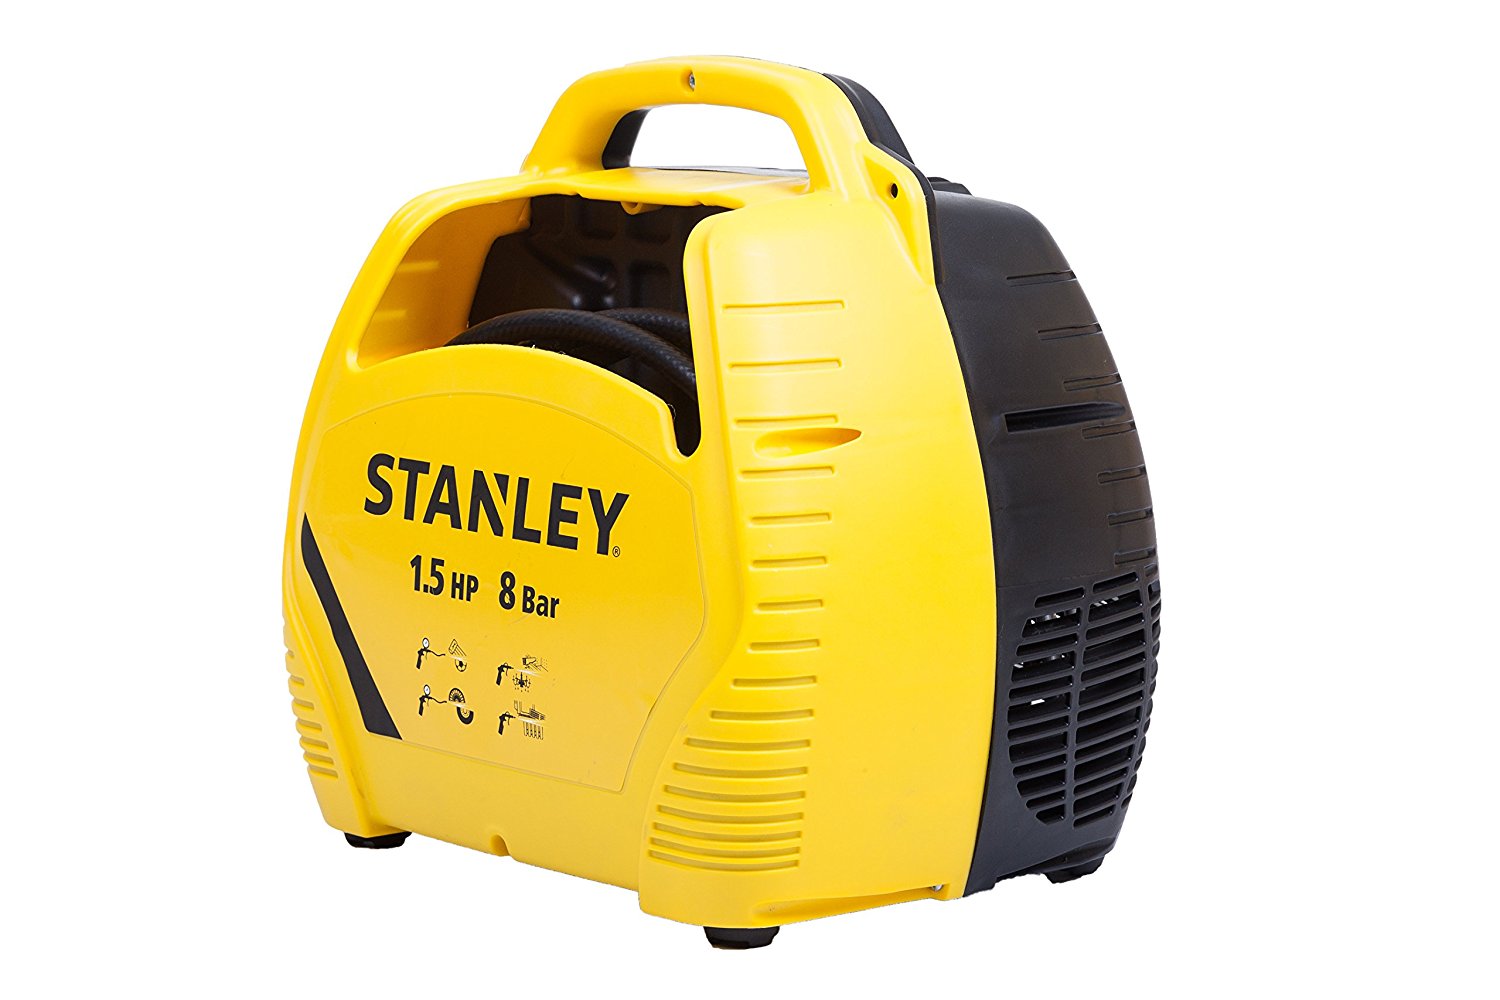 Compressore ad aria portatile 8bar 1.5hp Stanley 8215190STN595